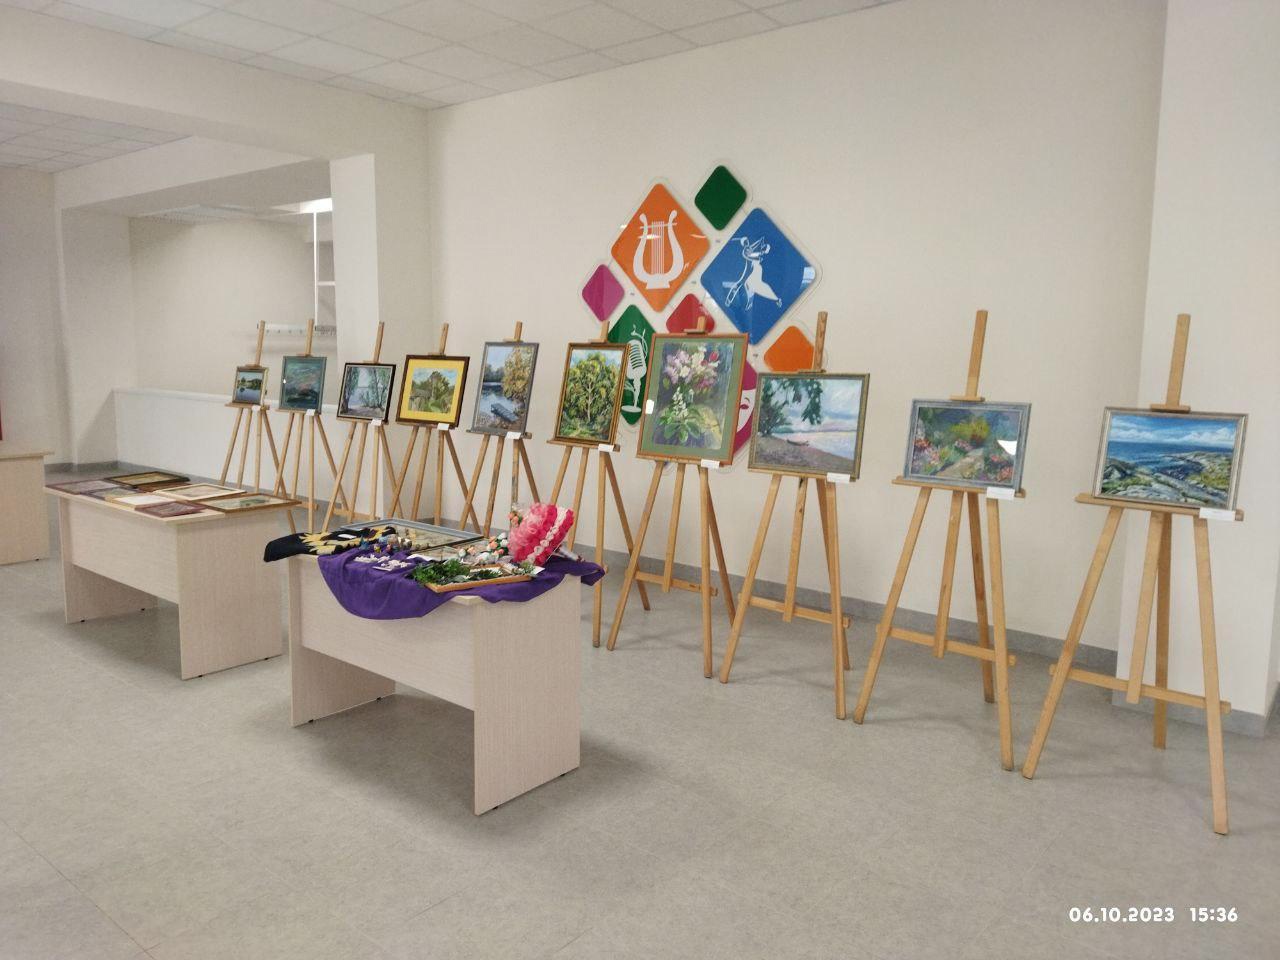 Светловские художники посвятили выставку своих работ Году педагога и наставника.